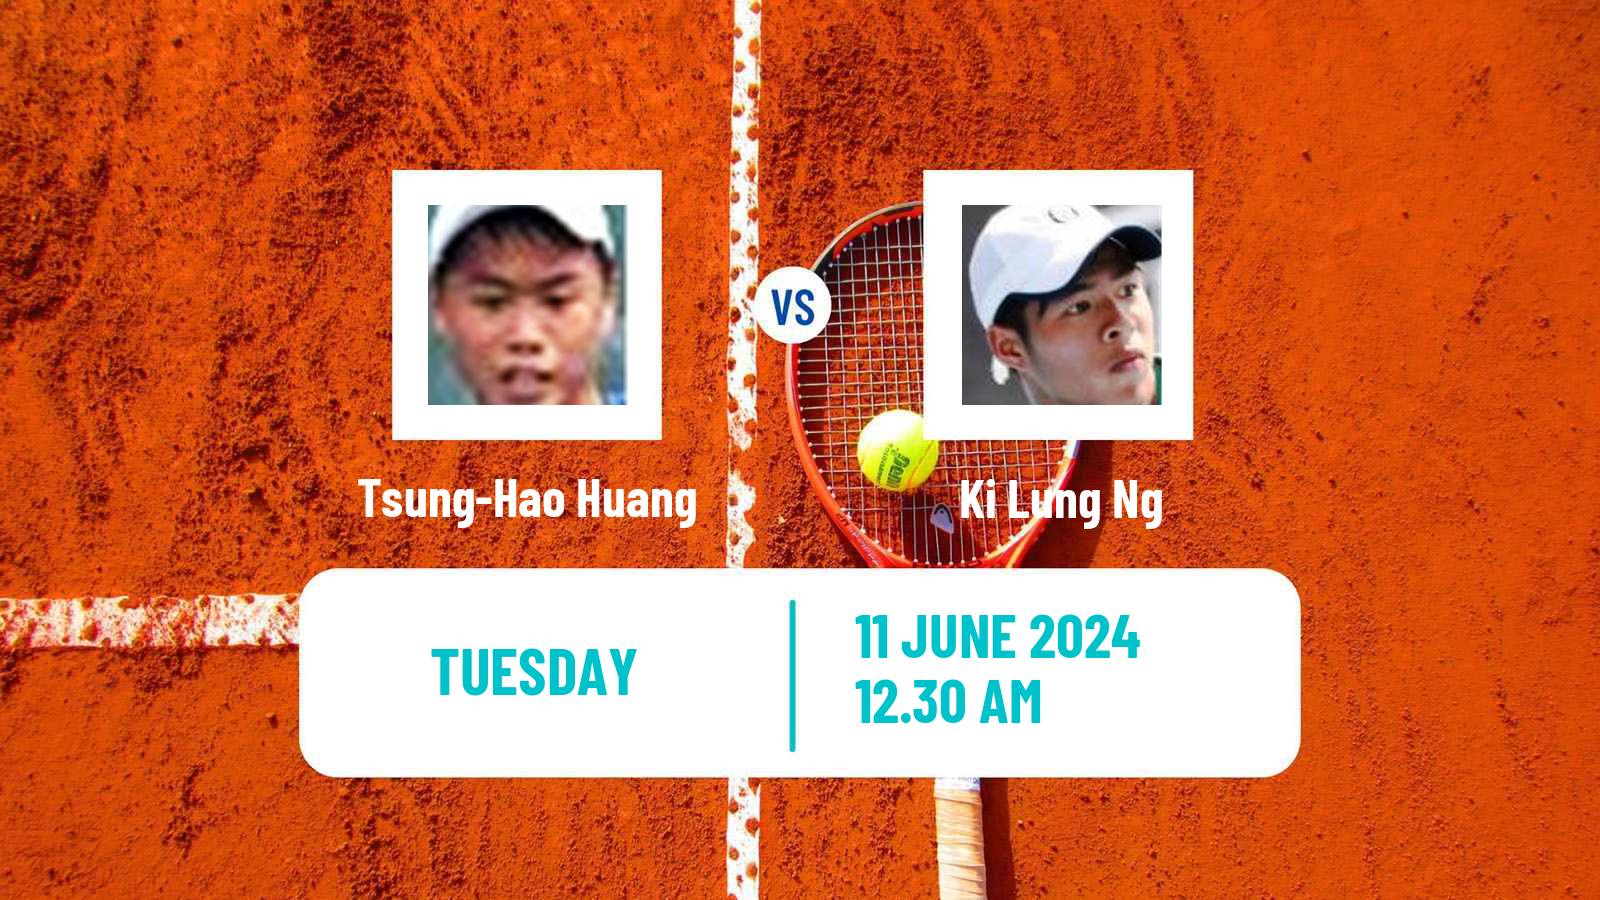 Tennis ITF M15 Hong Kong Men Tsung-Hao Huang - Ki Lung Ng